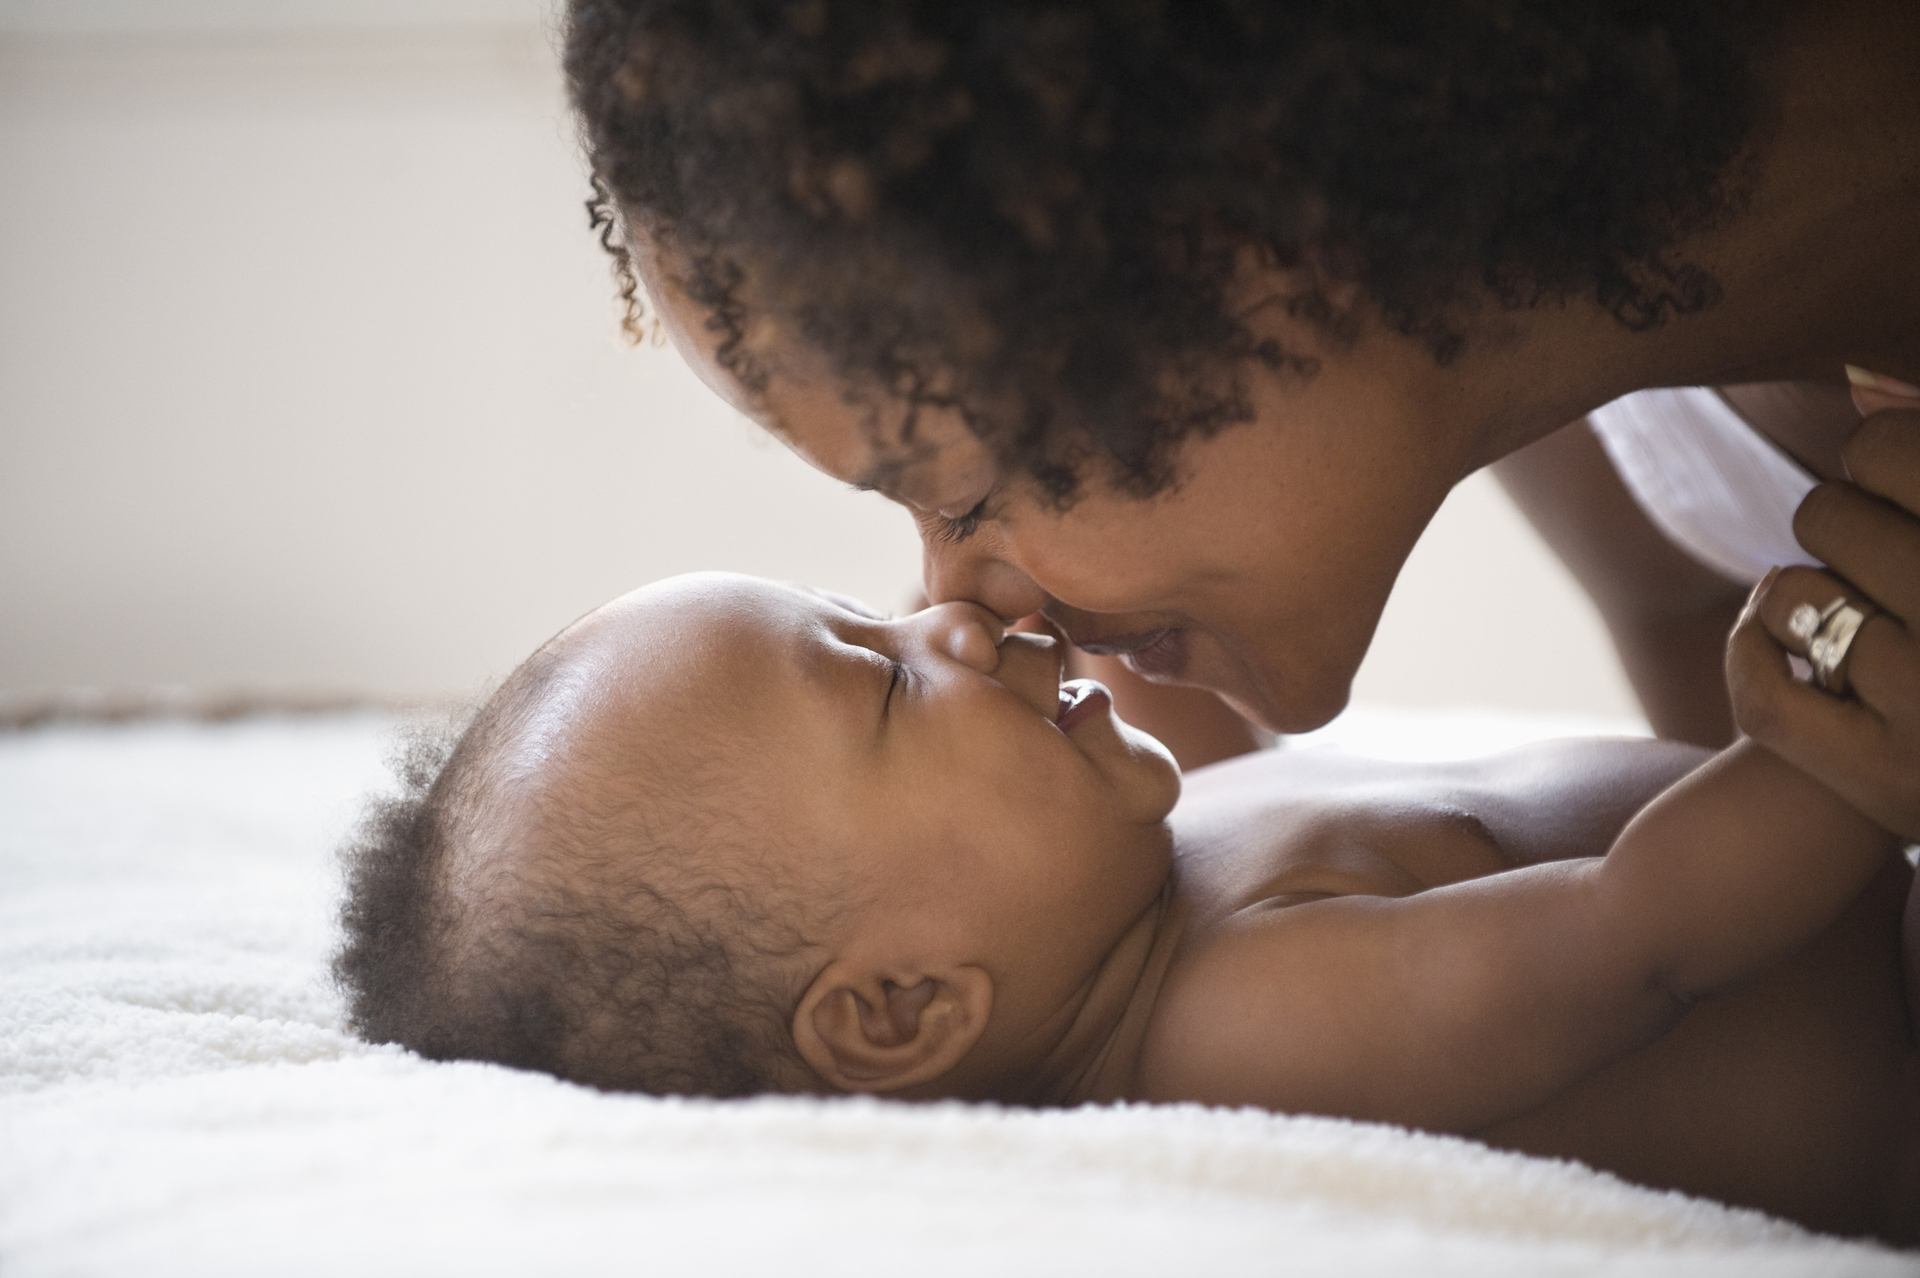 Contato pele a pele pode ajudar a redução de cólicas do bebê